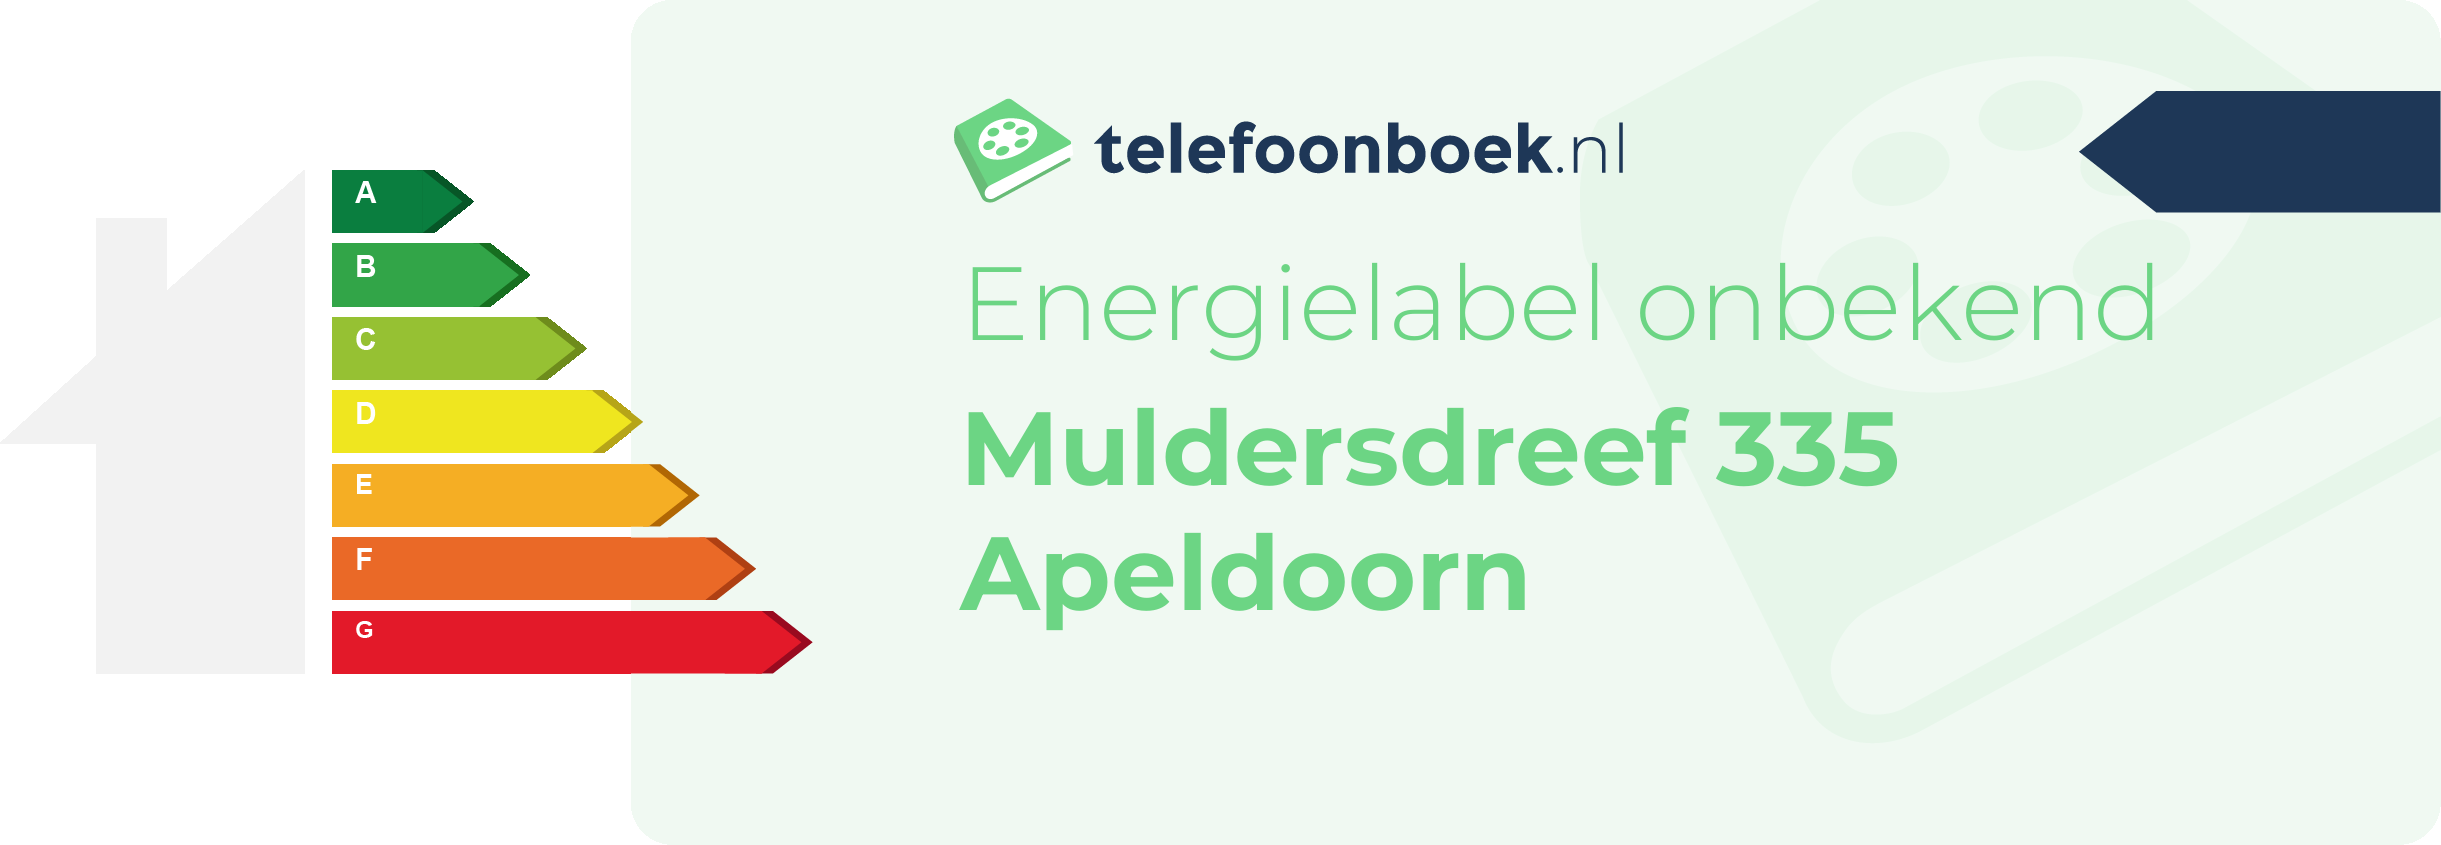 Energielabel Muldersdreef 335 Apeldoorn